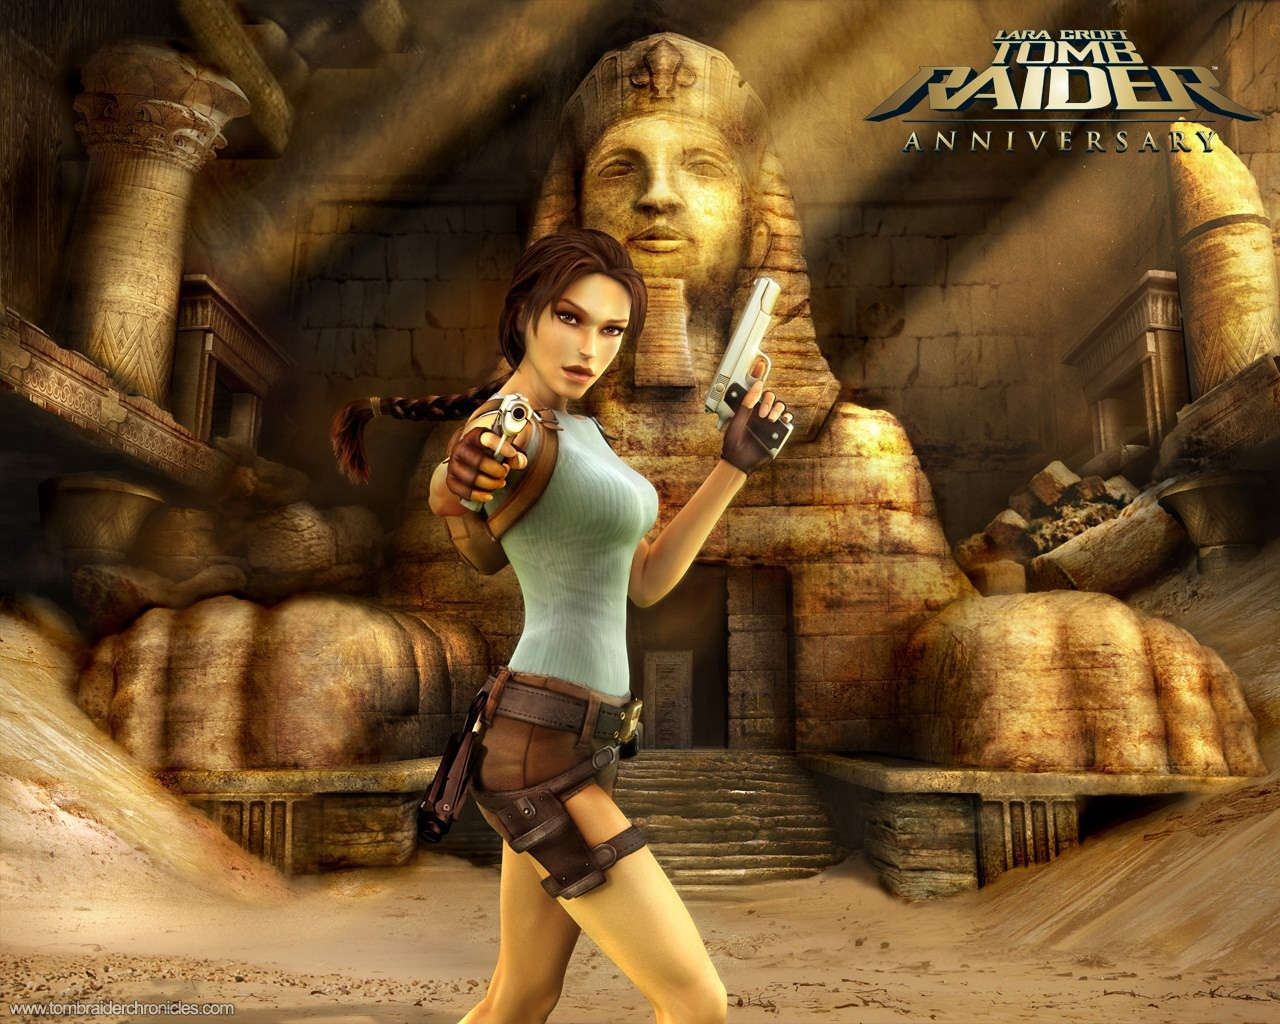 Lara Croft Tomb Raider 10th Anniversary Wallpaper #3 - 1280x1024